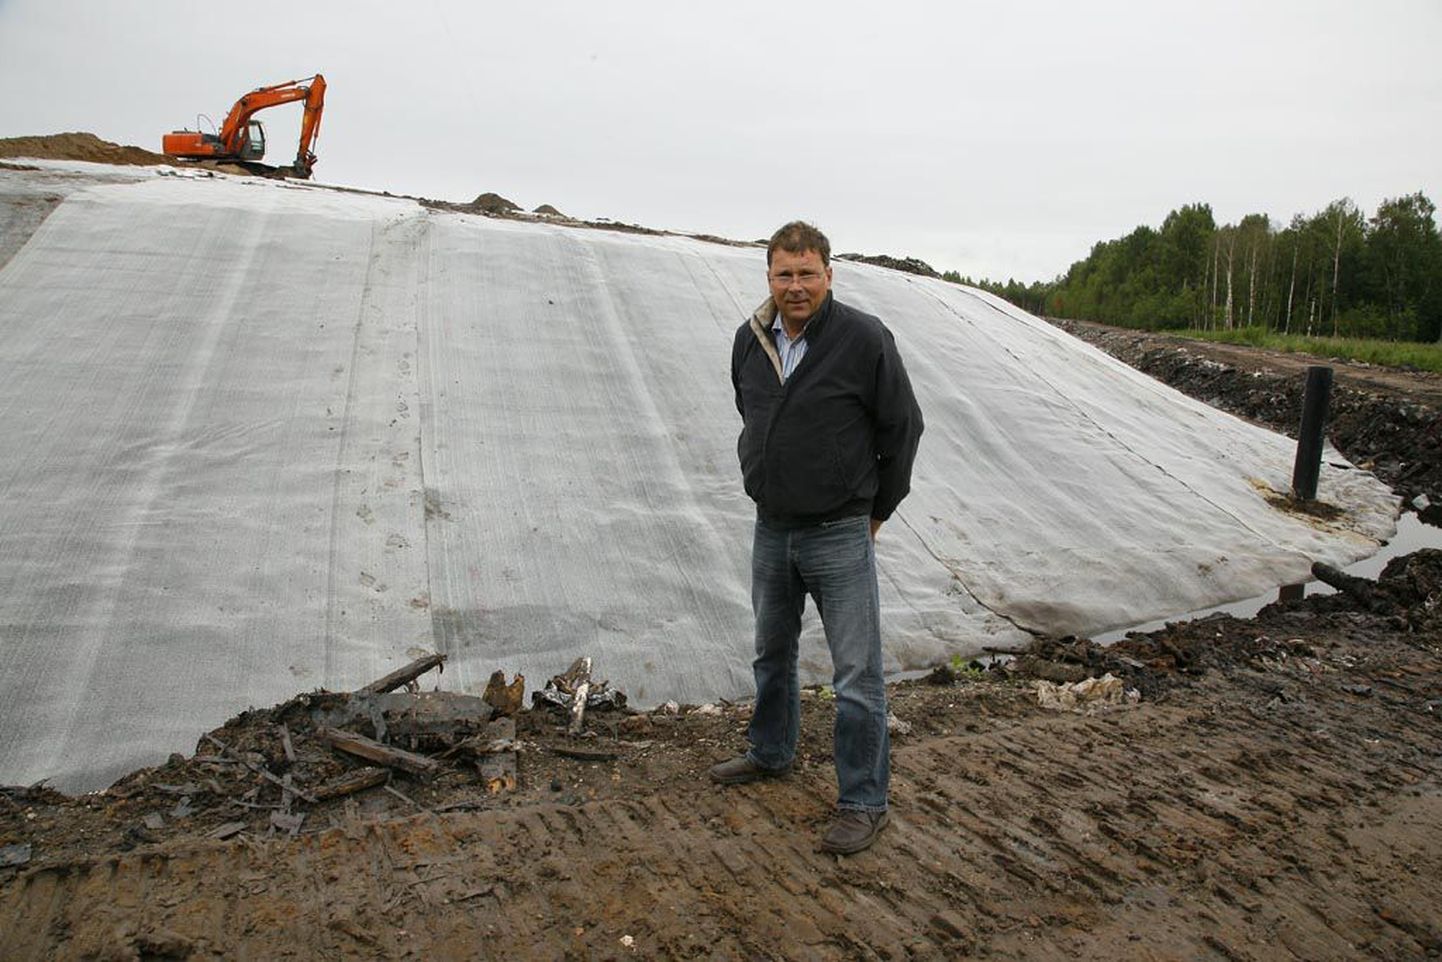 OÜ Paikre ehitusjuht Aivar Kester selgitas, et nõuetekohaselt suletava Pärnu vana prügimäe kattekihid ehitatakse vihma- ja lumesulaveekindlaks.